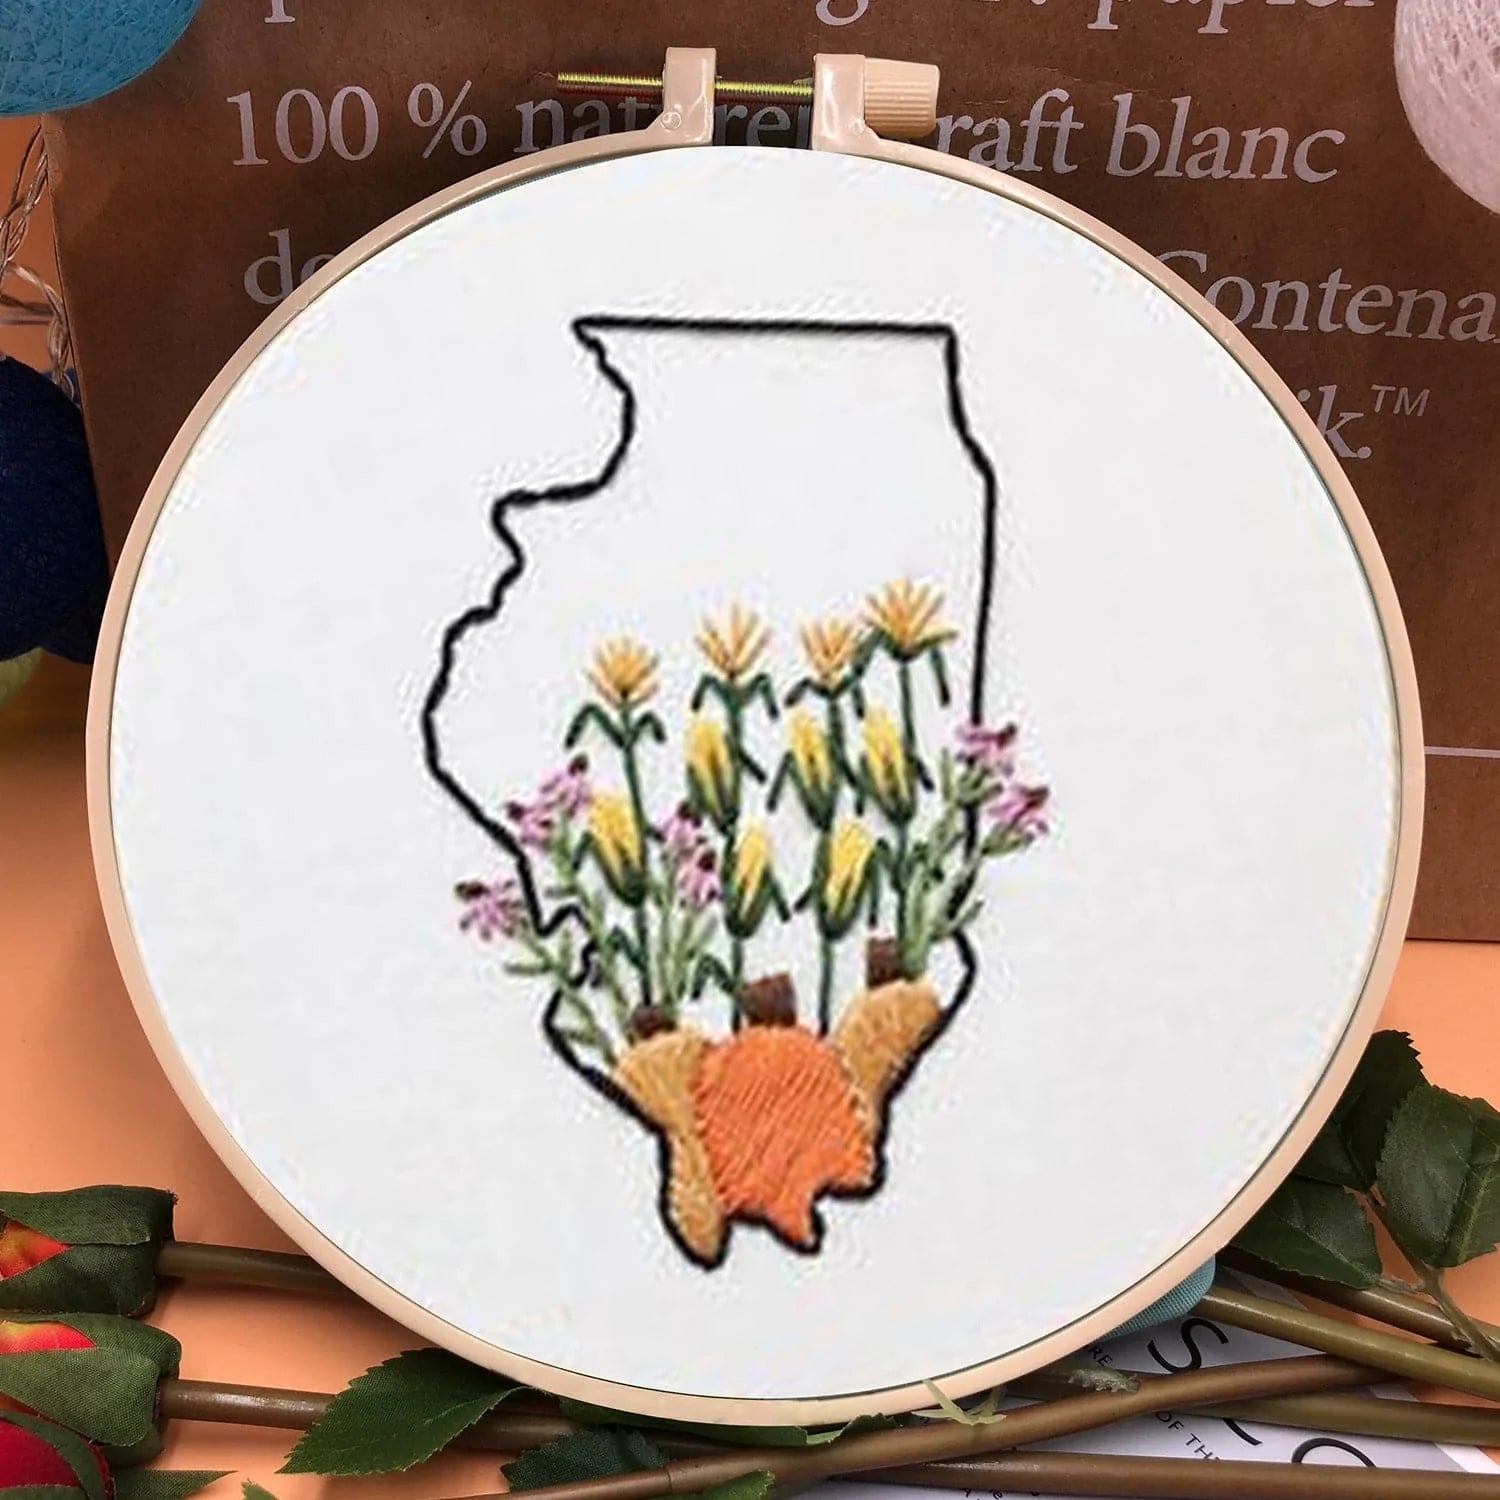 Irregular floral motifs - Embroidery ktclubs.com